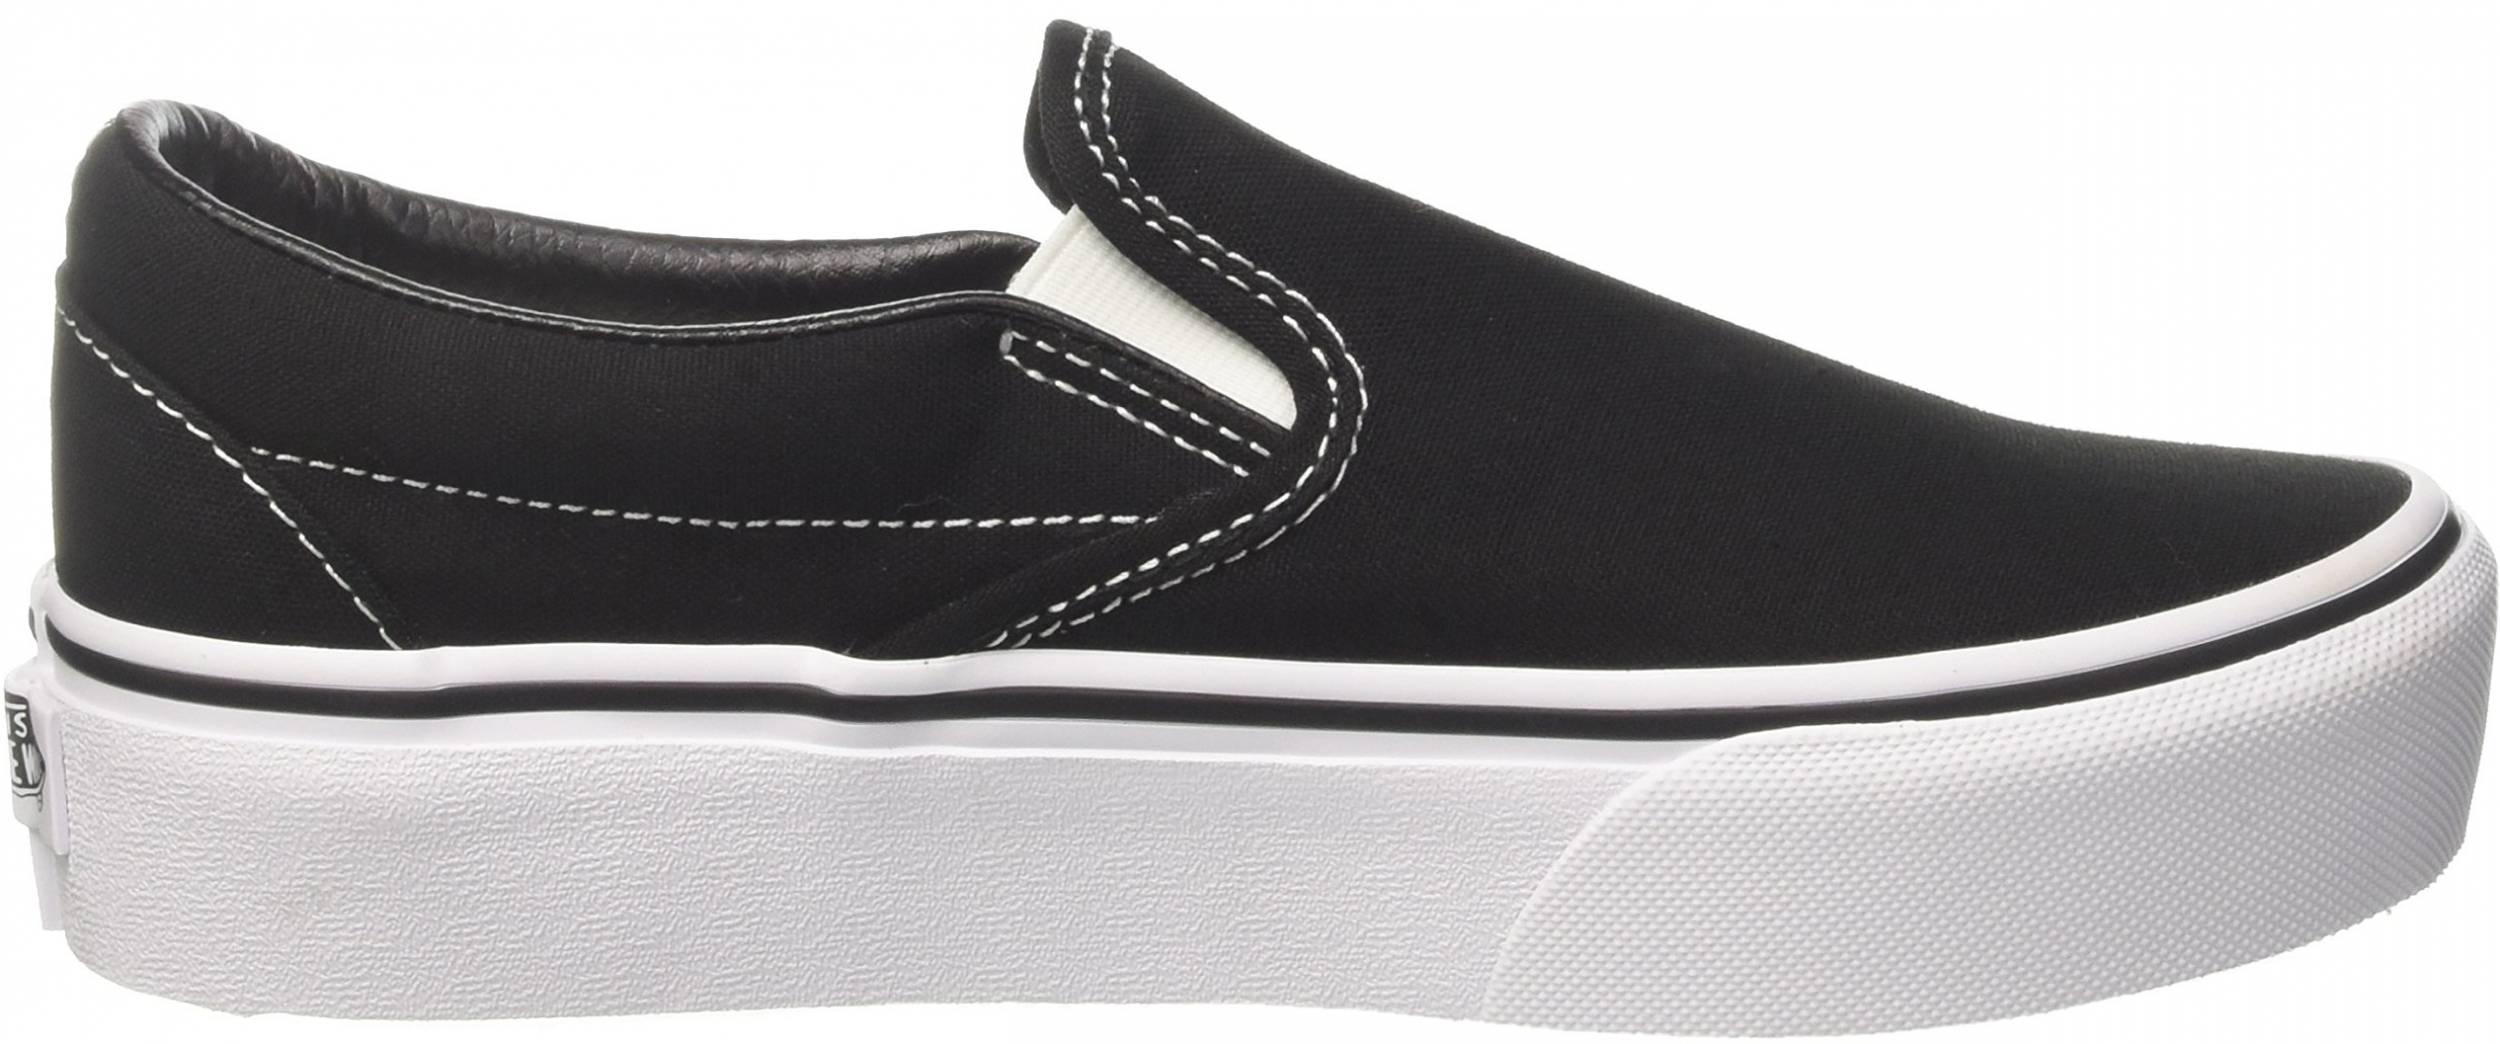 Vans Slip-On Platform sneakers in black white | RunRepeat